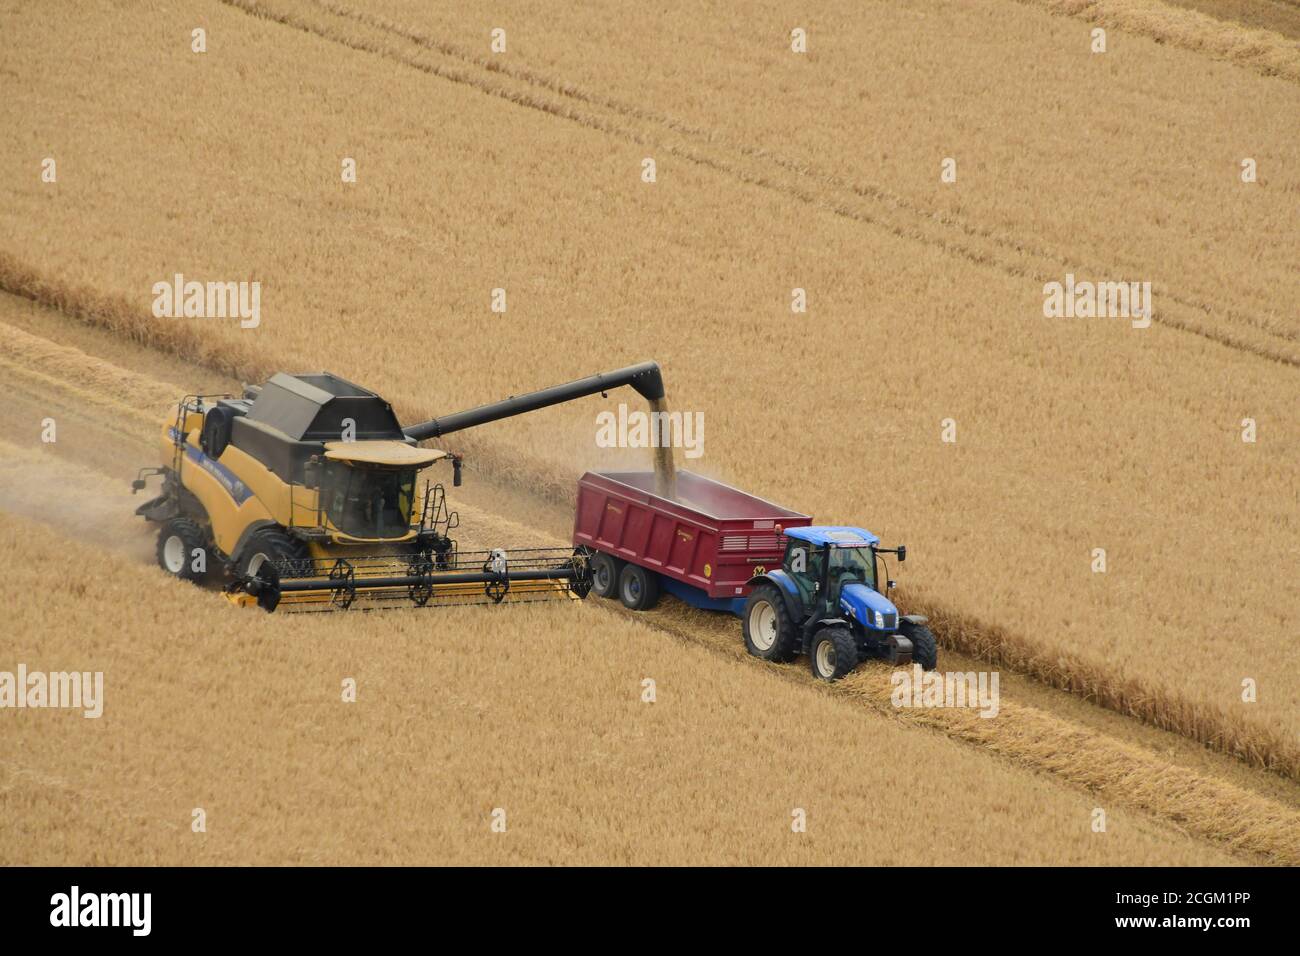 Une moissonneuse-batteuse qui télécharge son grain dans une remorque tractée par un tracteur dans un champ proche de Mere dans le Wiltshire. Royaume-Uni Banque D'Images